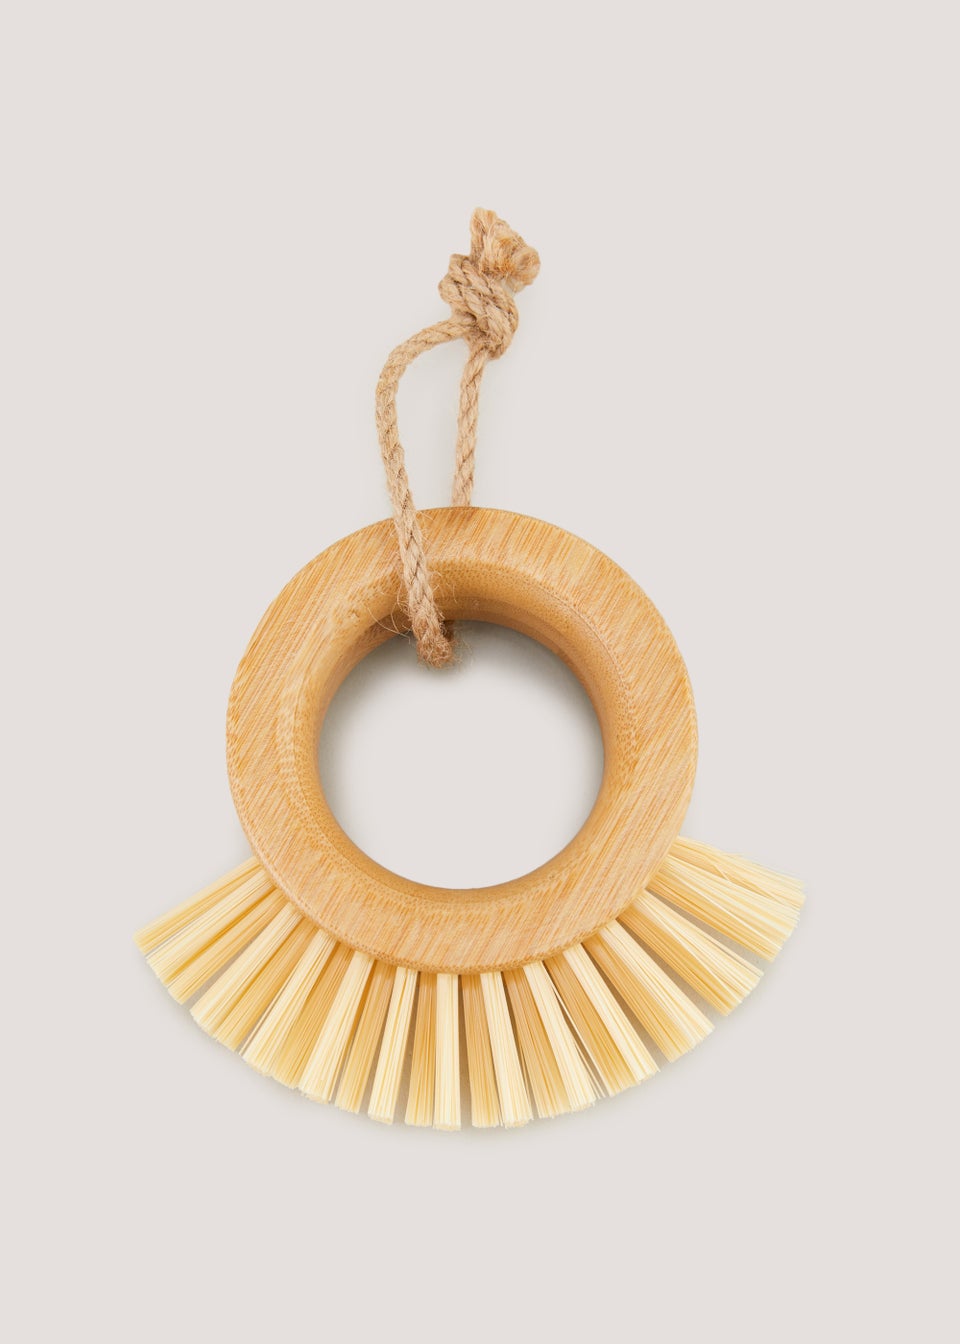 Wooden Ring Dish Brush (8cm)